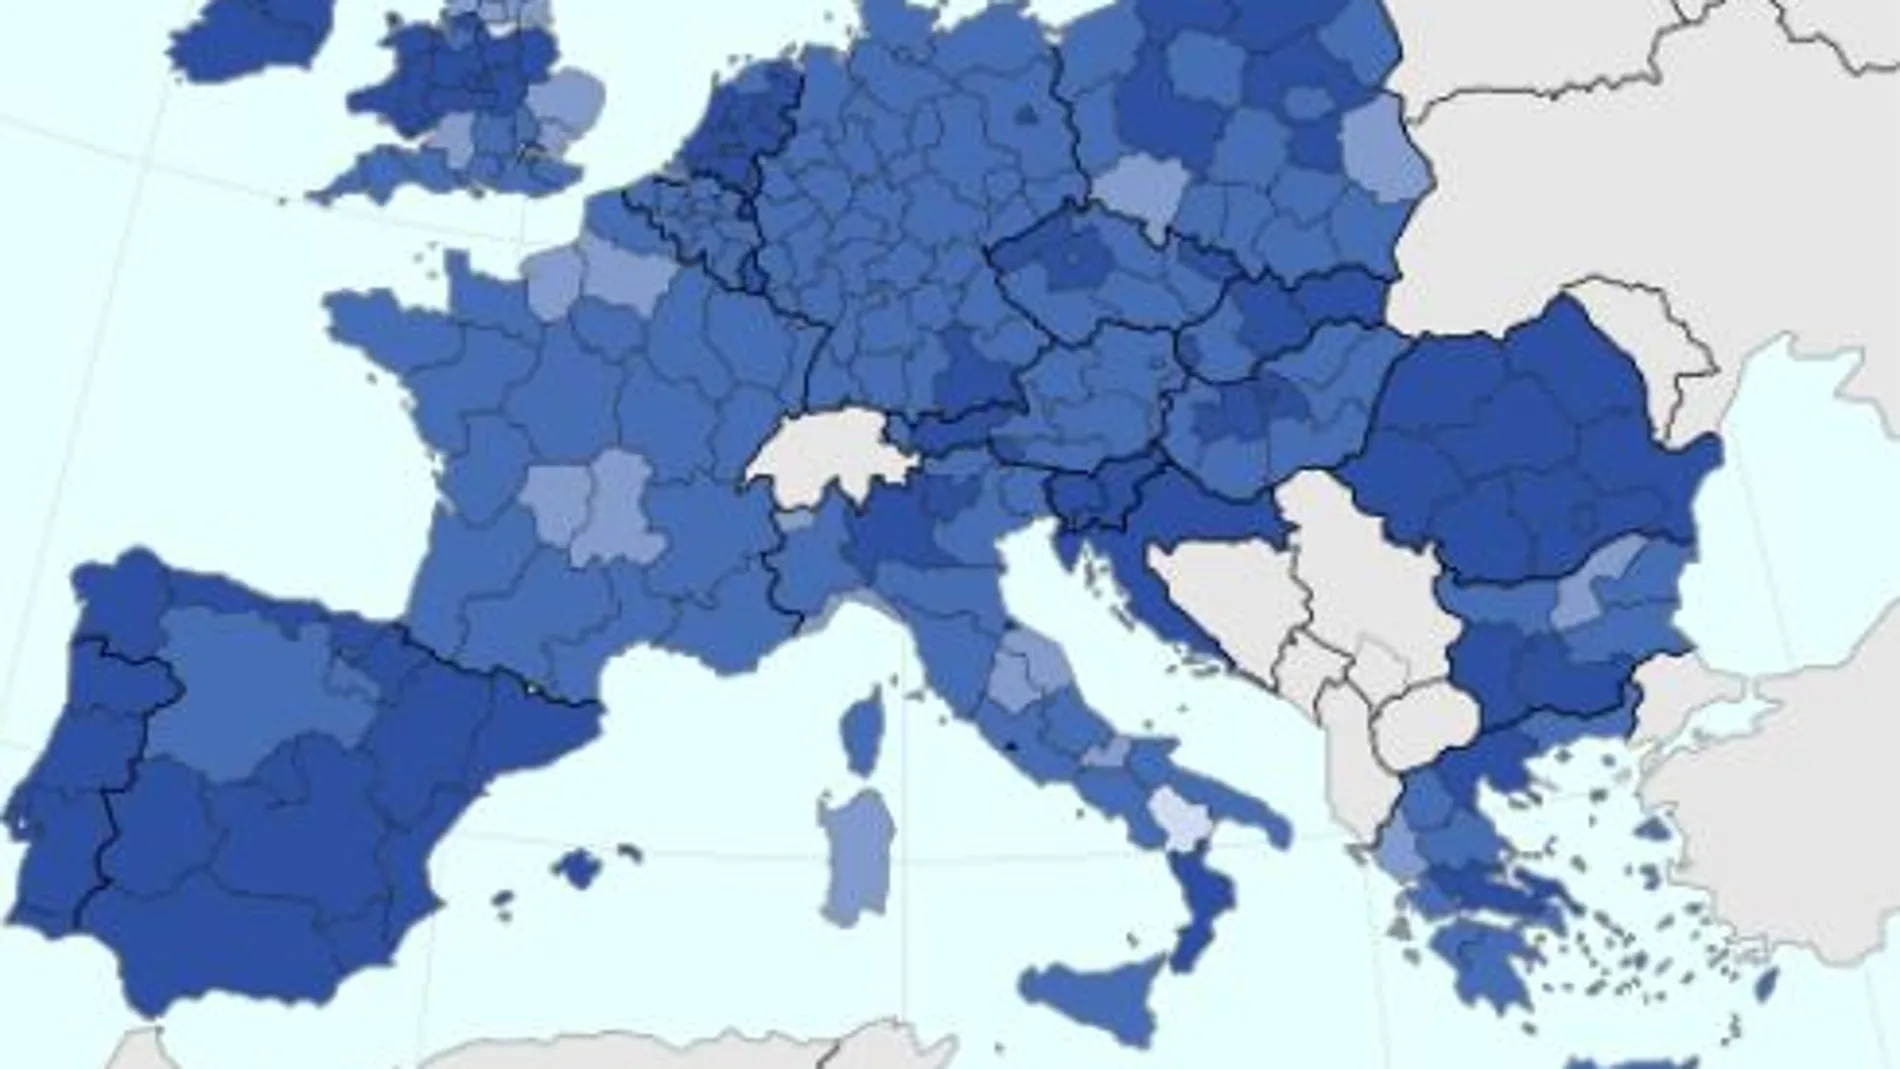 Madrid (124%), País Vasco (121%), Navarra (113%), Cataluña (110%) y Aragón (101%) superaron la media de la UE / Eurostat